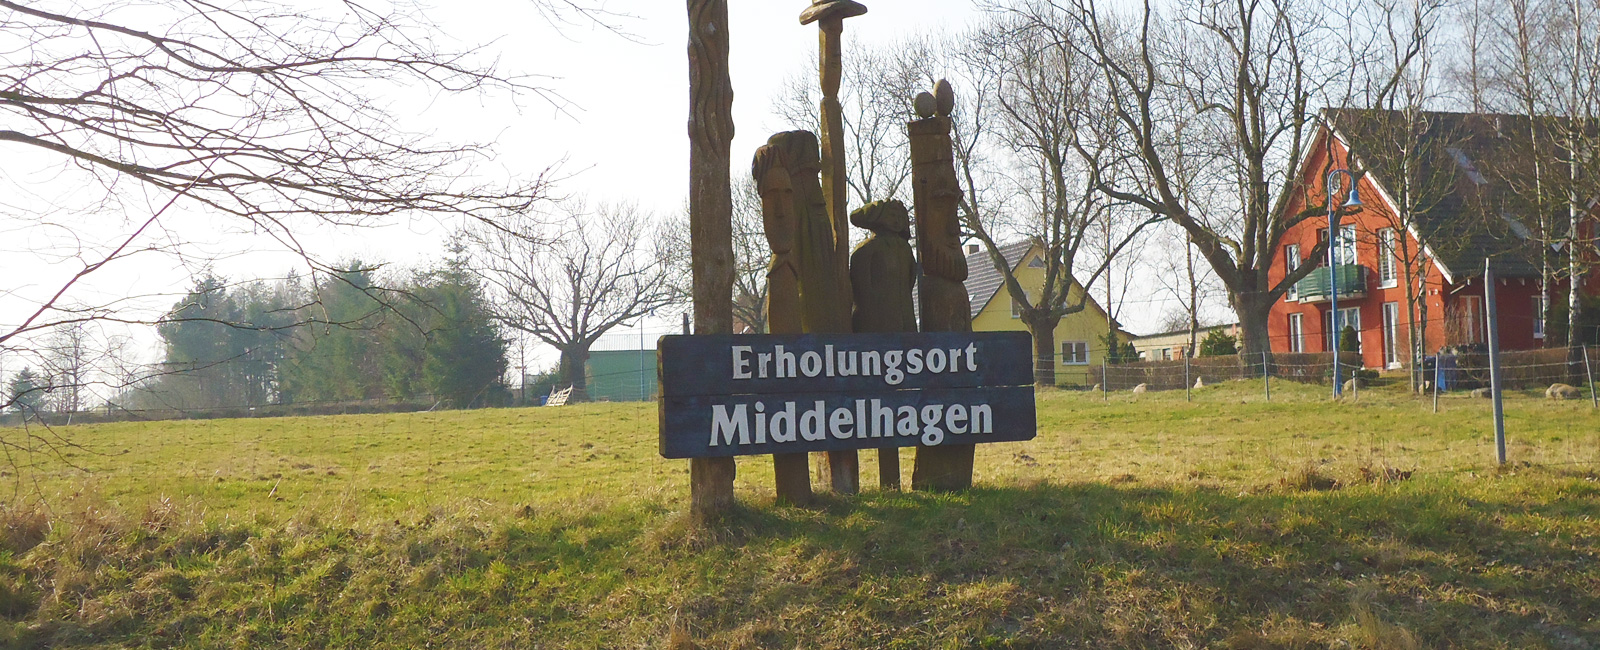 Middelhagen - Ausflugstipps (Motiv 1 / 2)